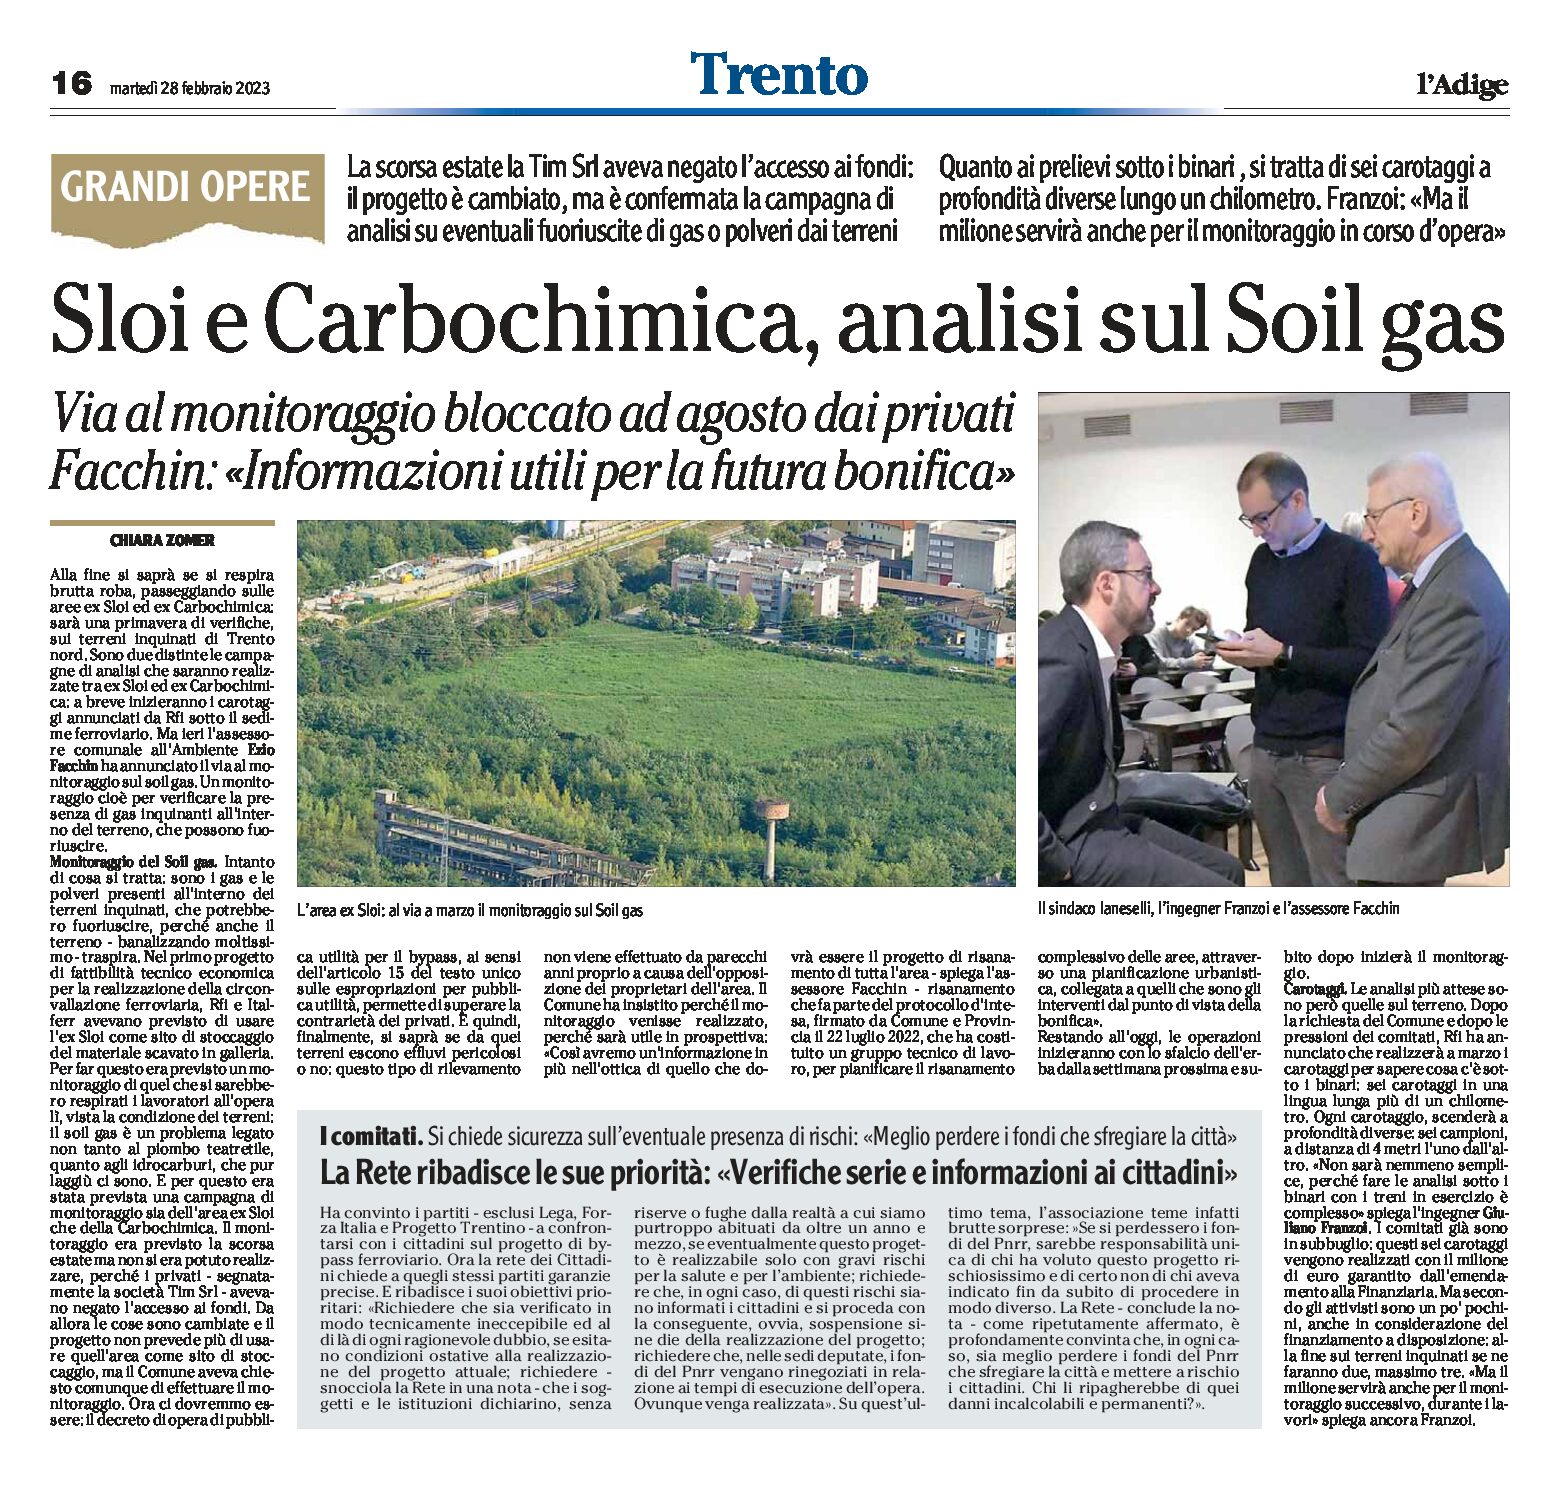 Trento Nord: area ex Sloi e ex Carbochimica, analisi sul Soil gas